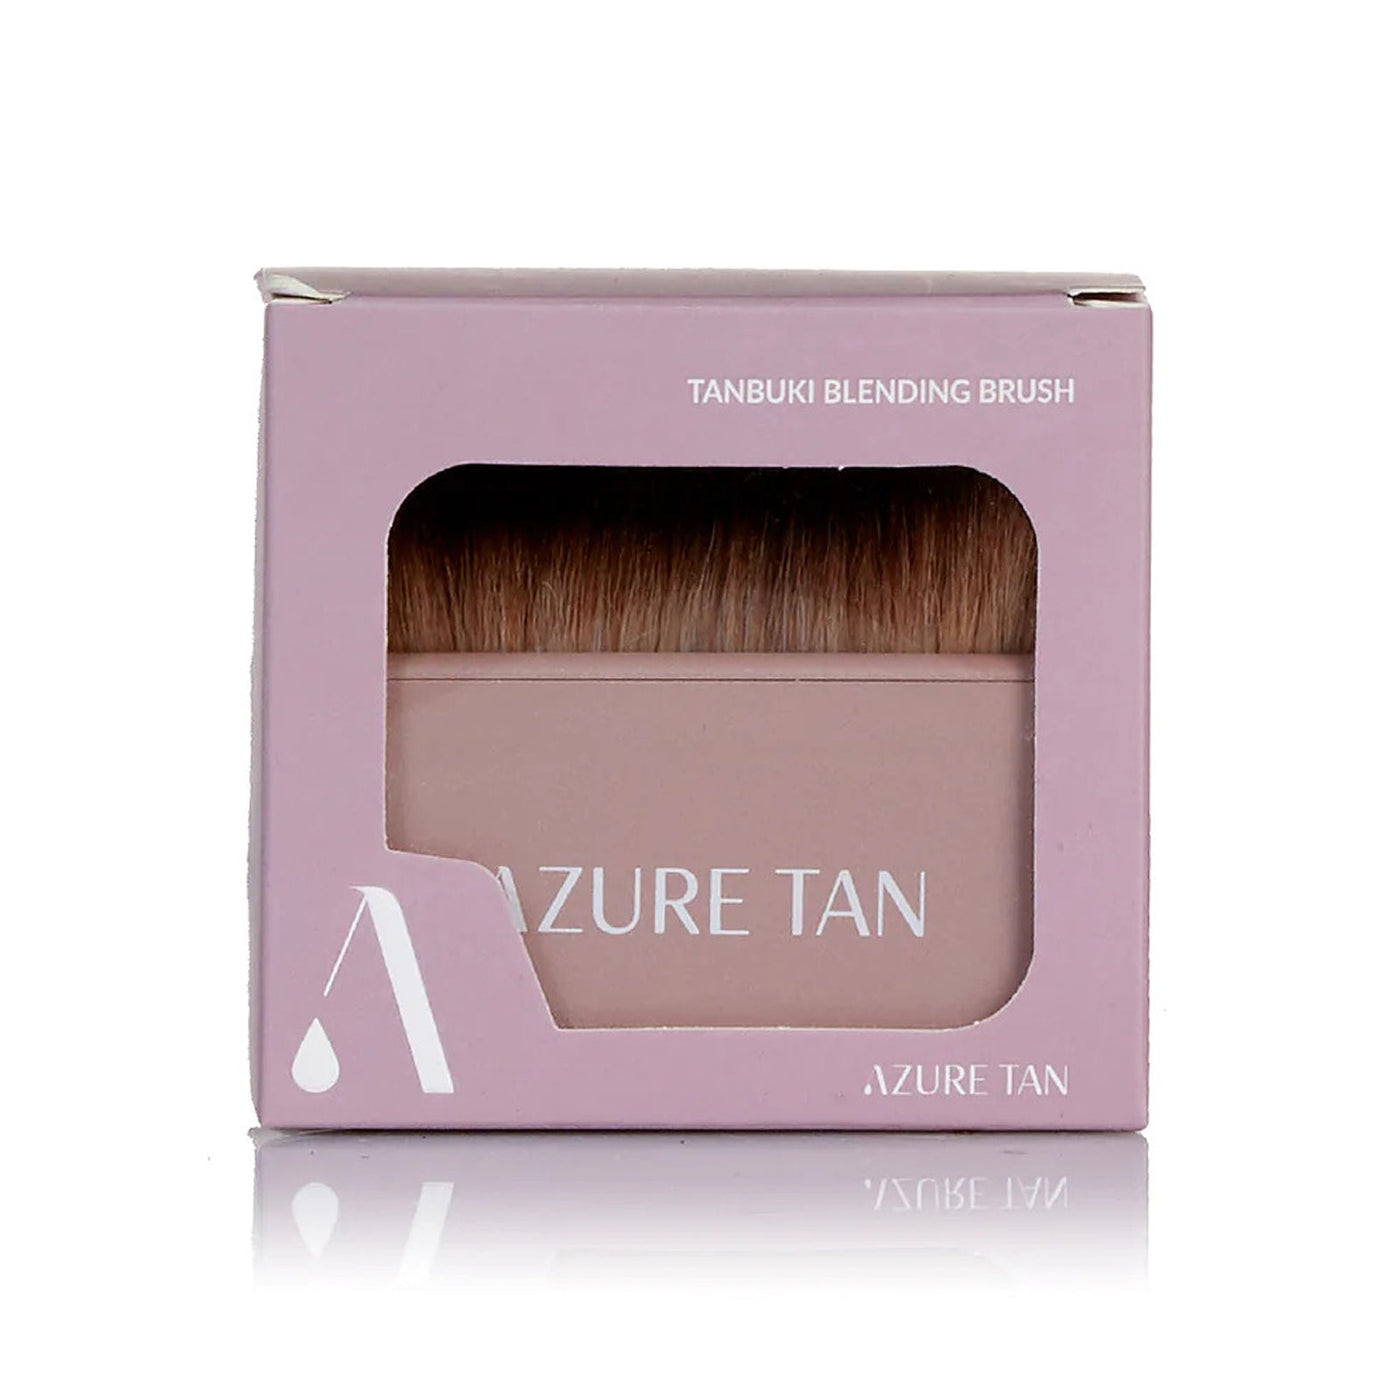 Azure Tan Tanbuki Blending Brush packaging